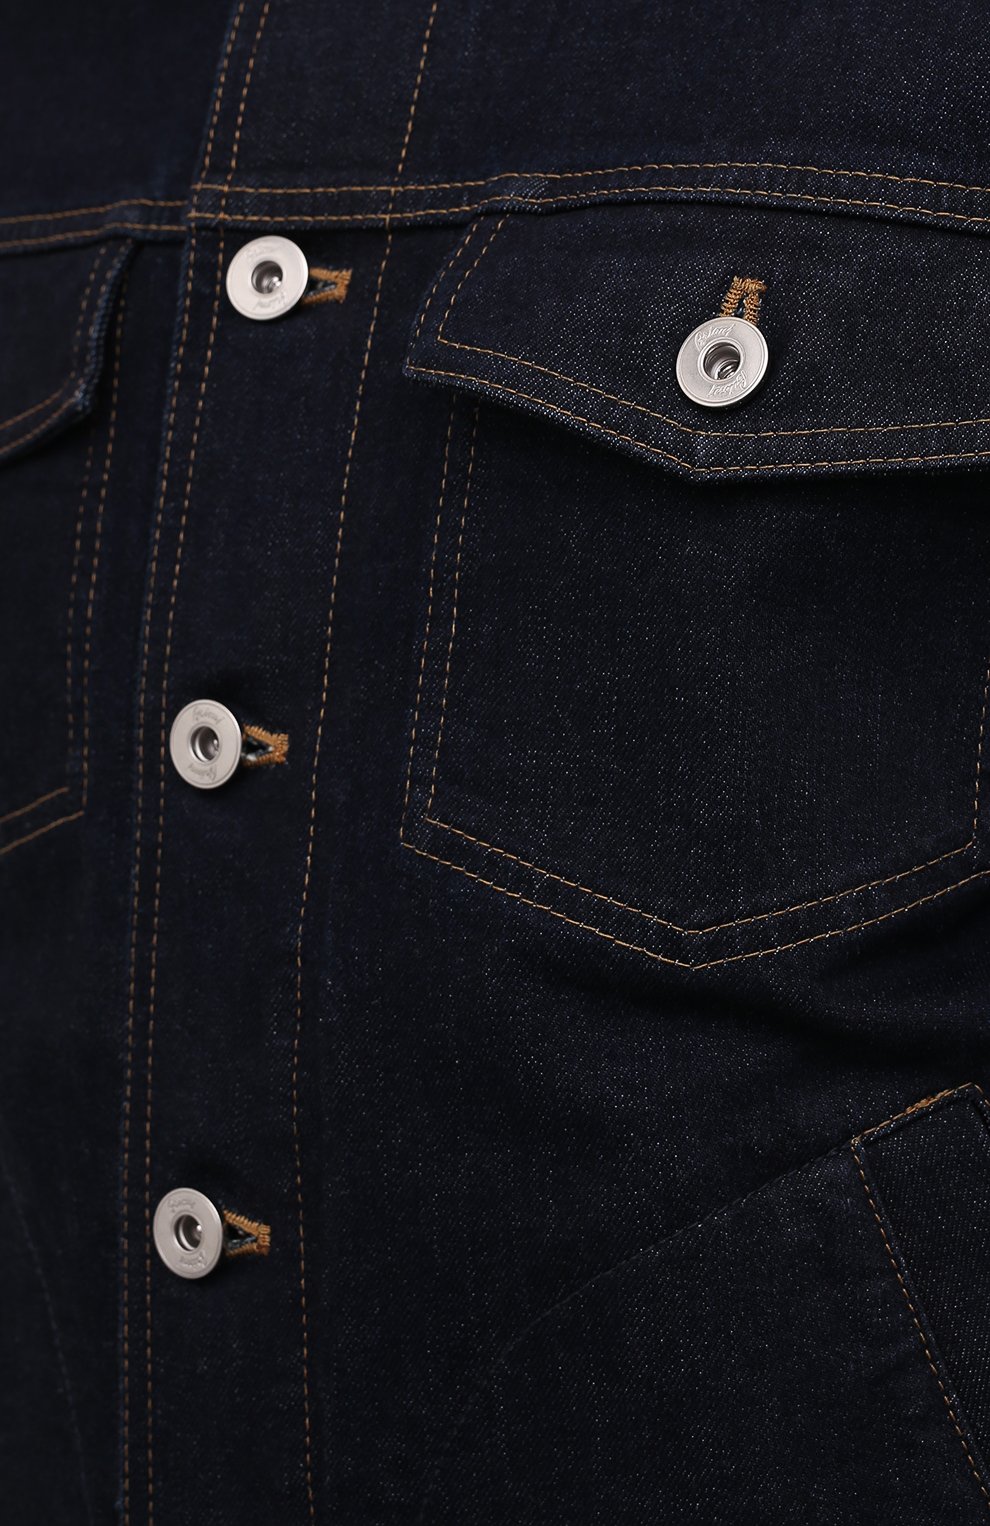 Мужская джинсовая куртка BRIONI темно-синего цвета, арт. SLRR0L/P1D03 | Фото 5 (Кросс-КТ: Куртка, Деним; Рукава: Длинные; Материал внешний: Хлопок, Деним; Длина (верхняя одежда): Короткие; Стили: Кэжуэл)